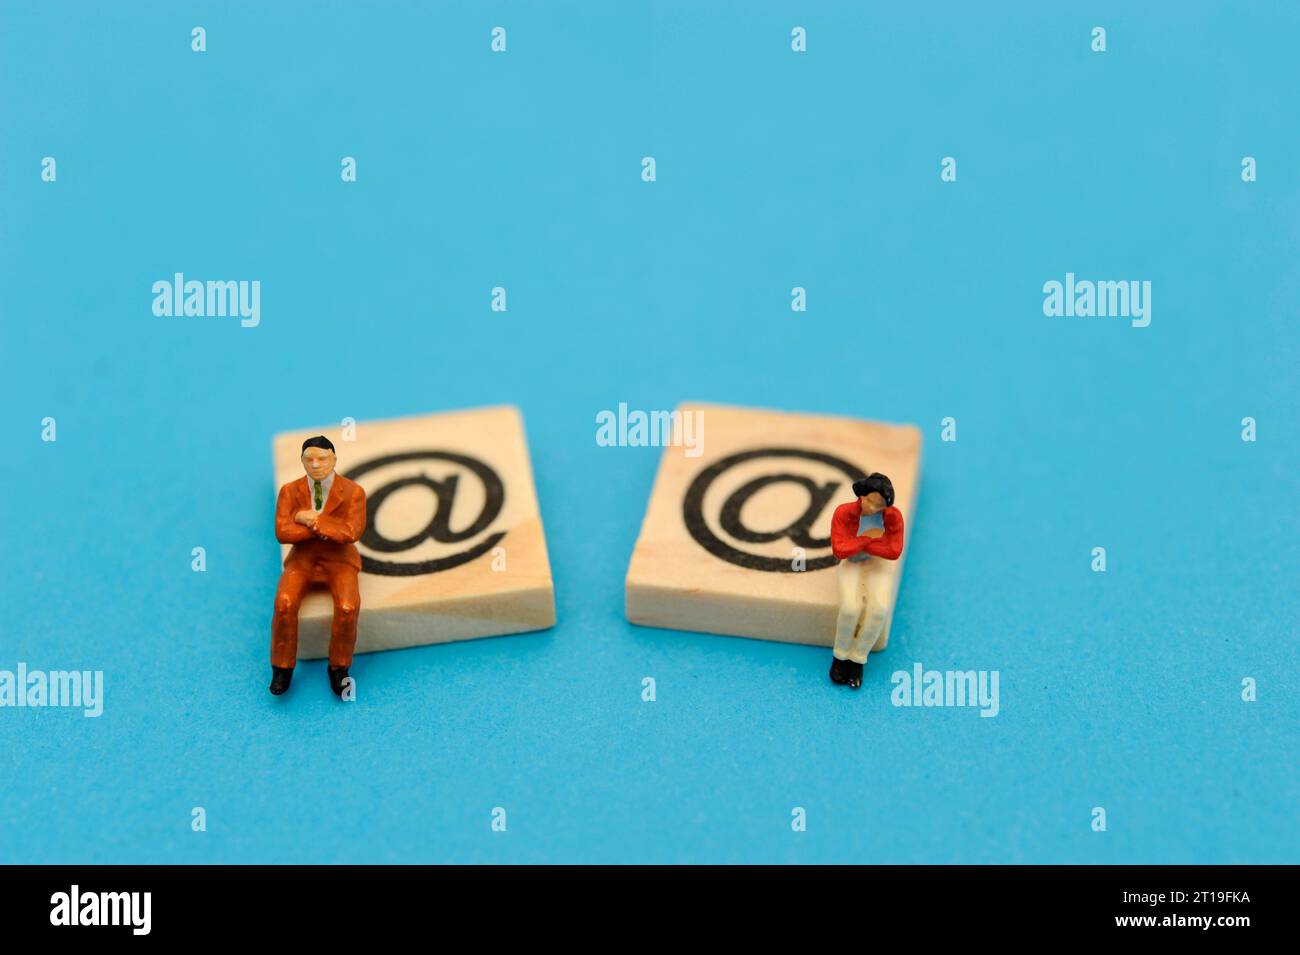 figurines miniatures et symboles d'email Banque D'Images